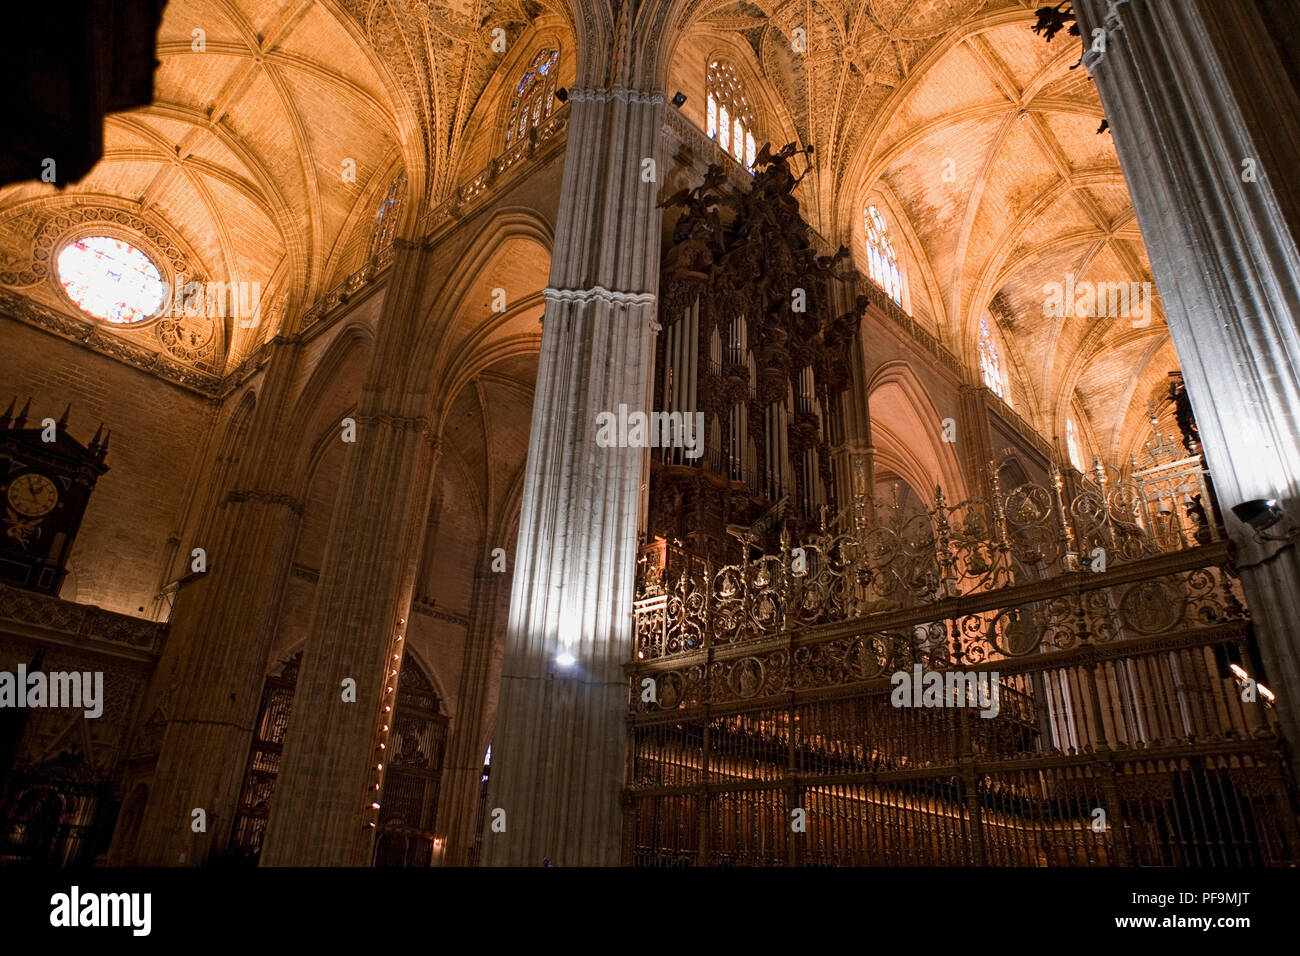 Choeur et orgue, Cathédrale de Santa María de la Sede, Sevilla, Espagne/ La Cathédrale de Séville est la plus grande église gothique dans le monde Banque D'Images